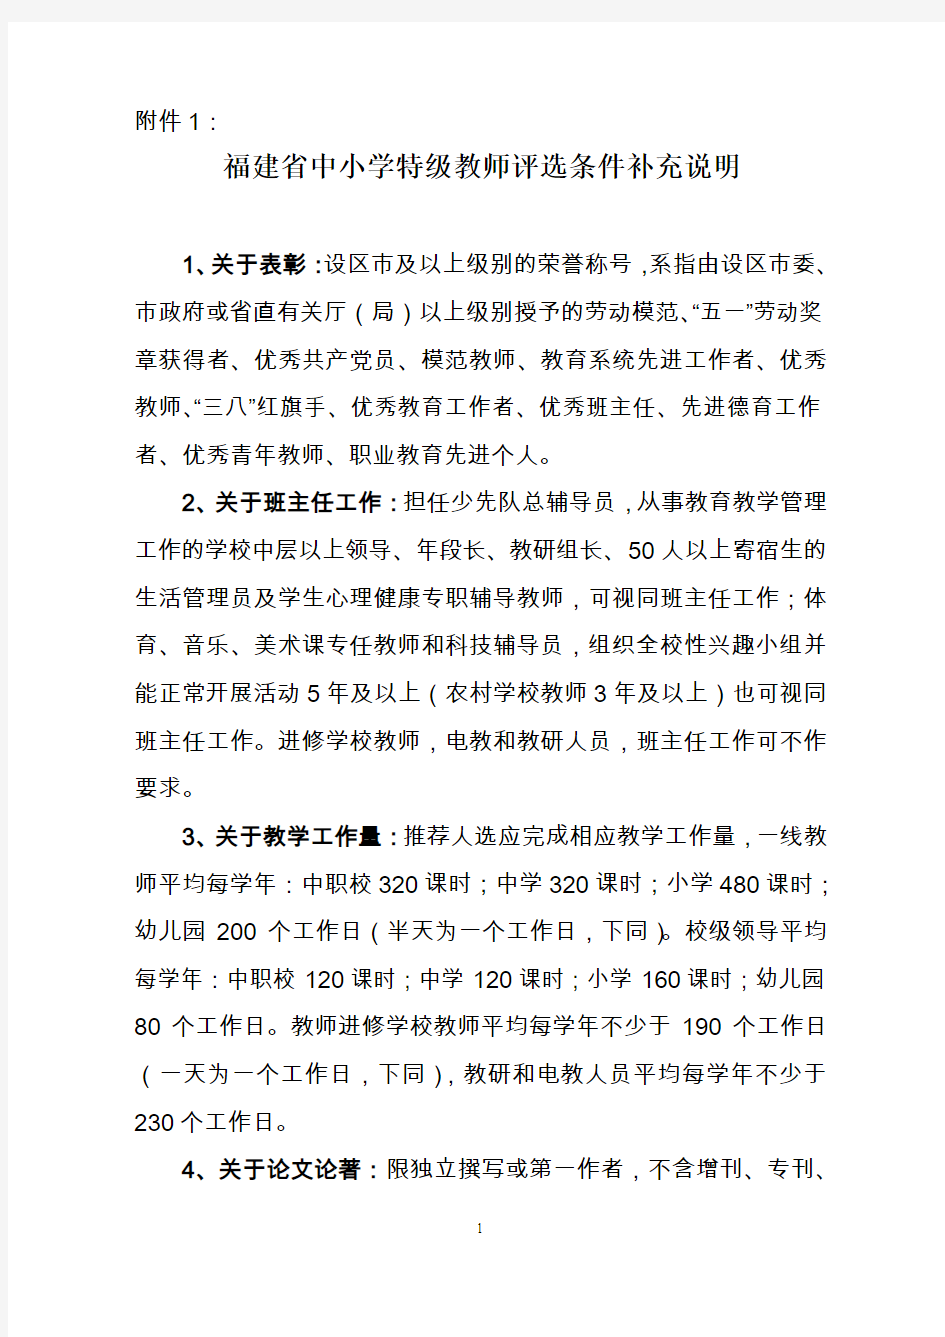 福建省中小学特级教师评选条件补充说明